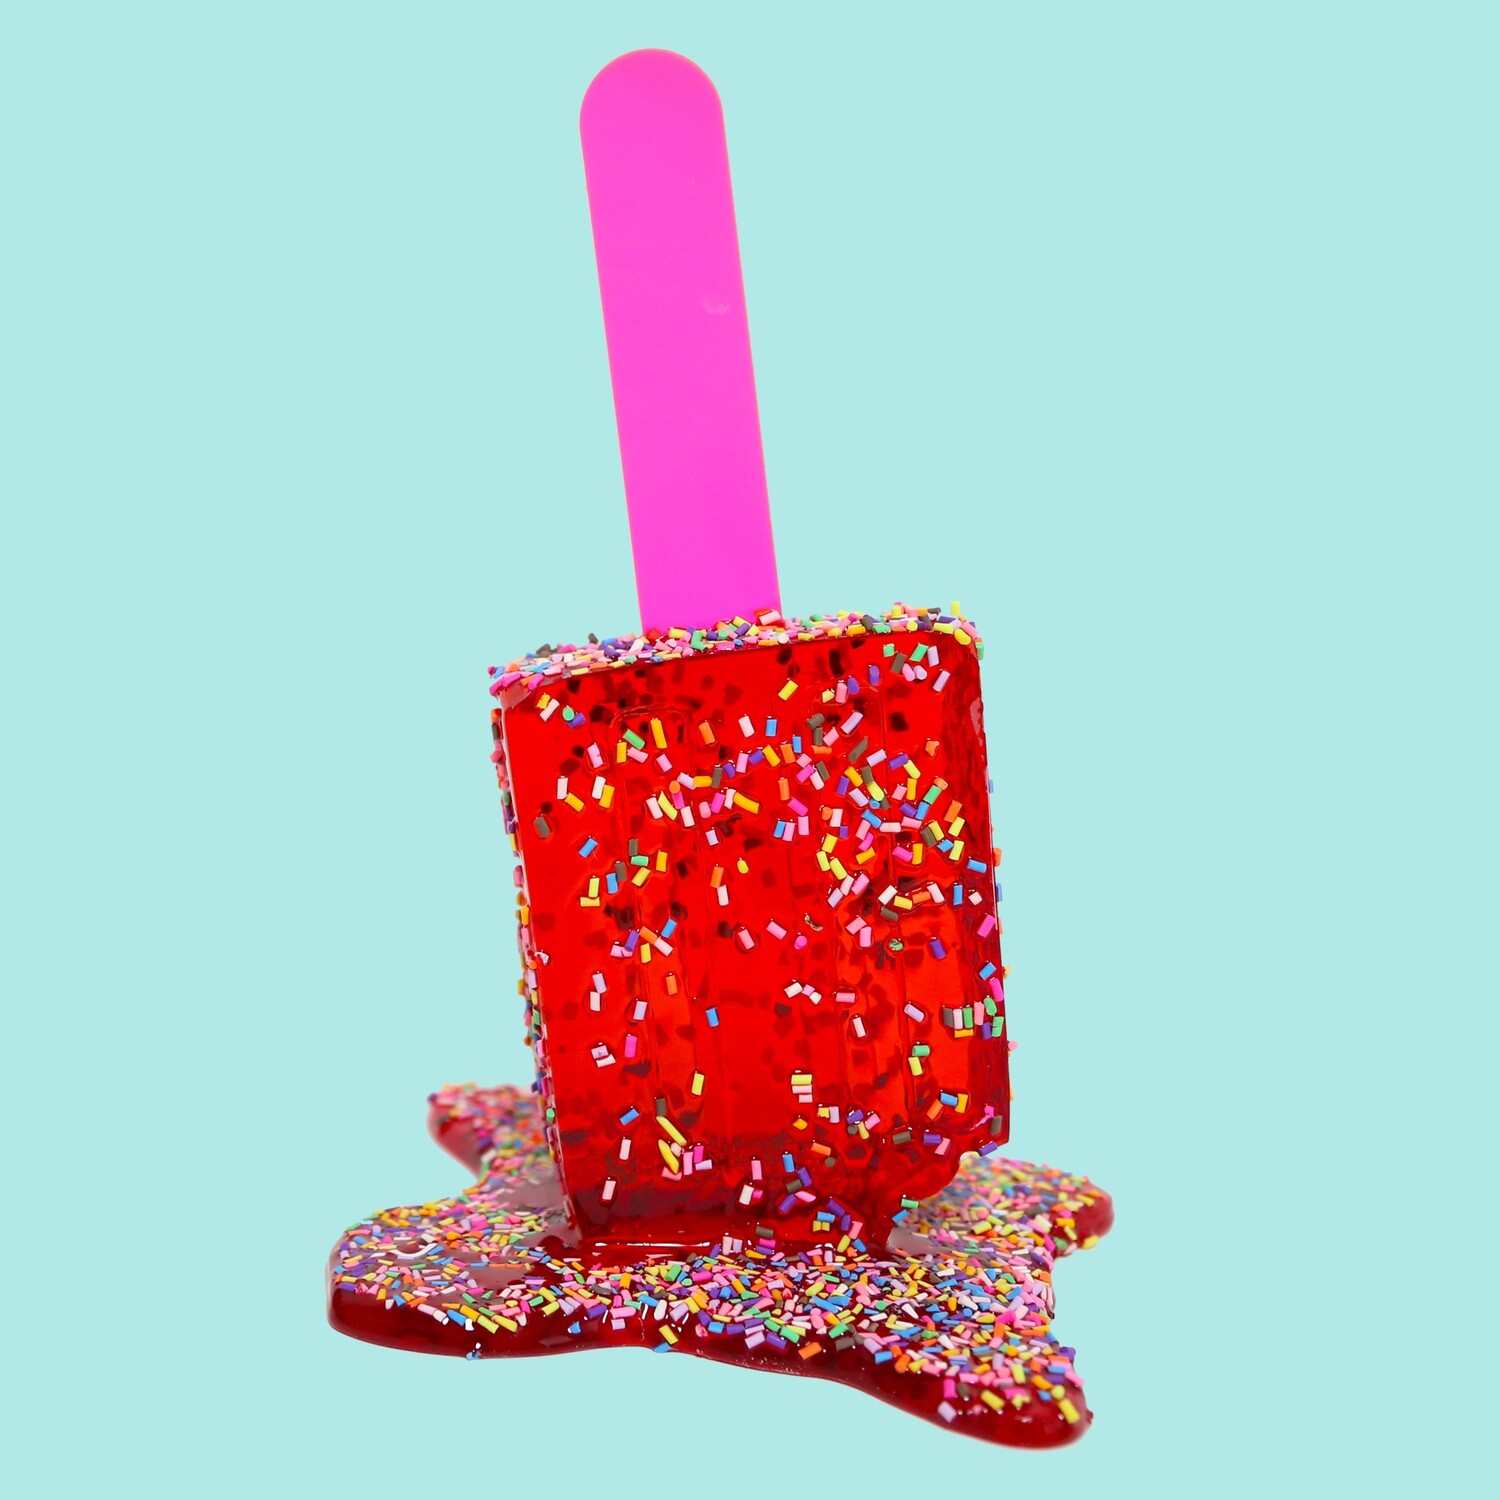 Melting Popsicle Art - Bigger Ruby Sprinkle Pop - Original Melting Pops